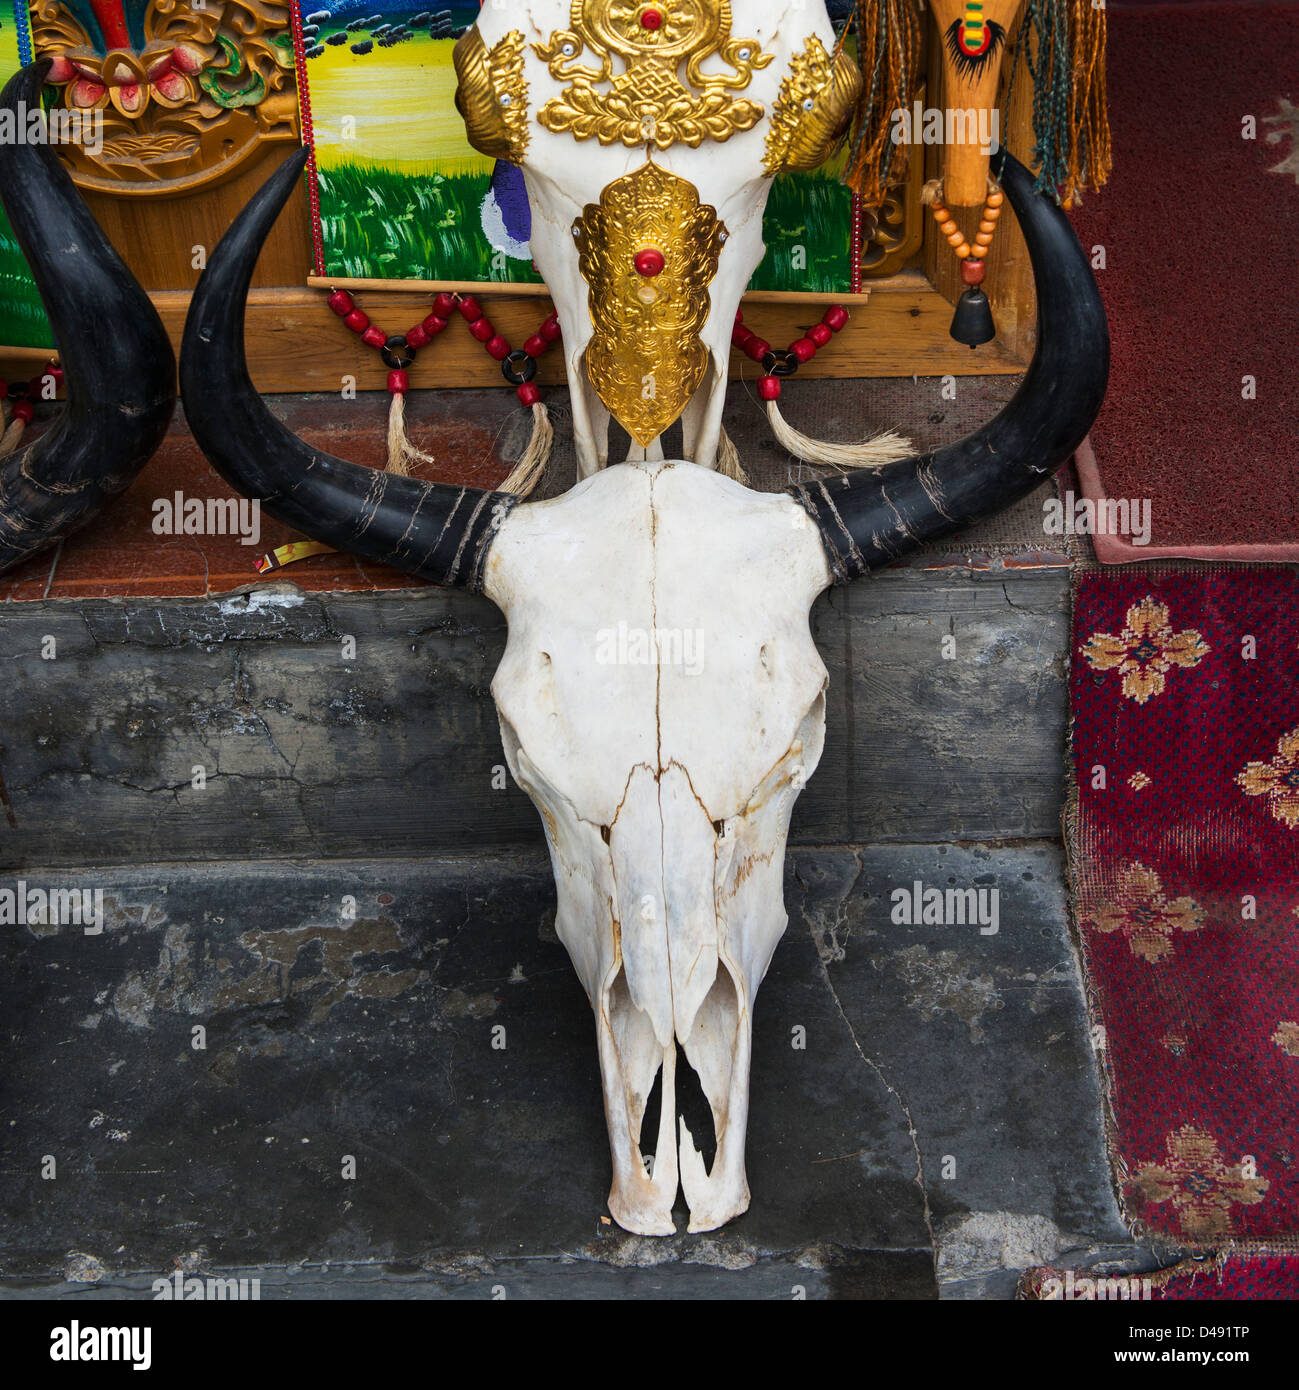 Crâne d'une tête d'animal sur une étape;Lhasa xizang china Banque D'Images